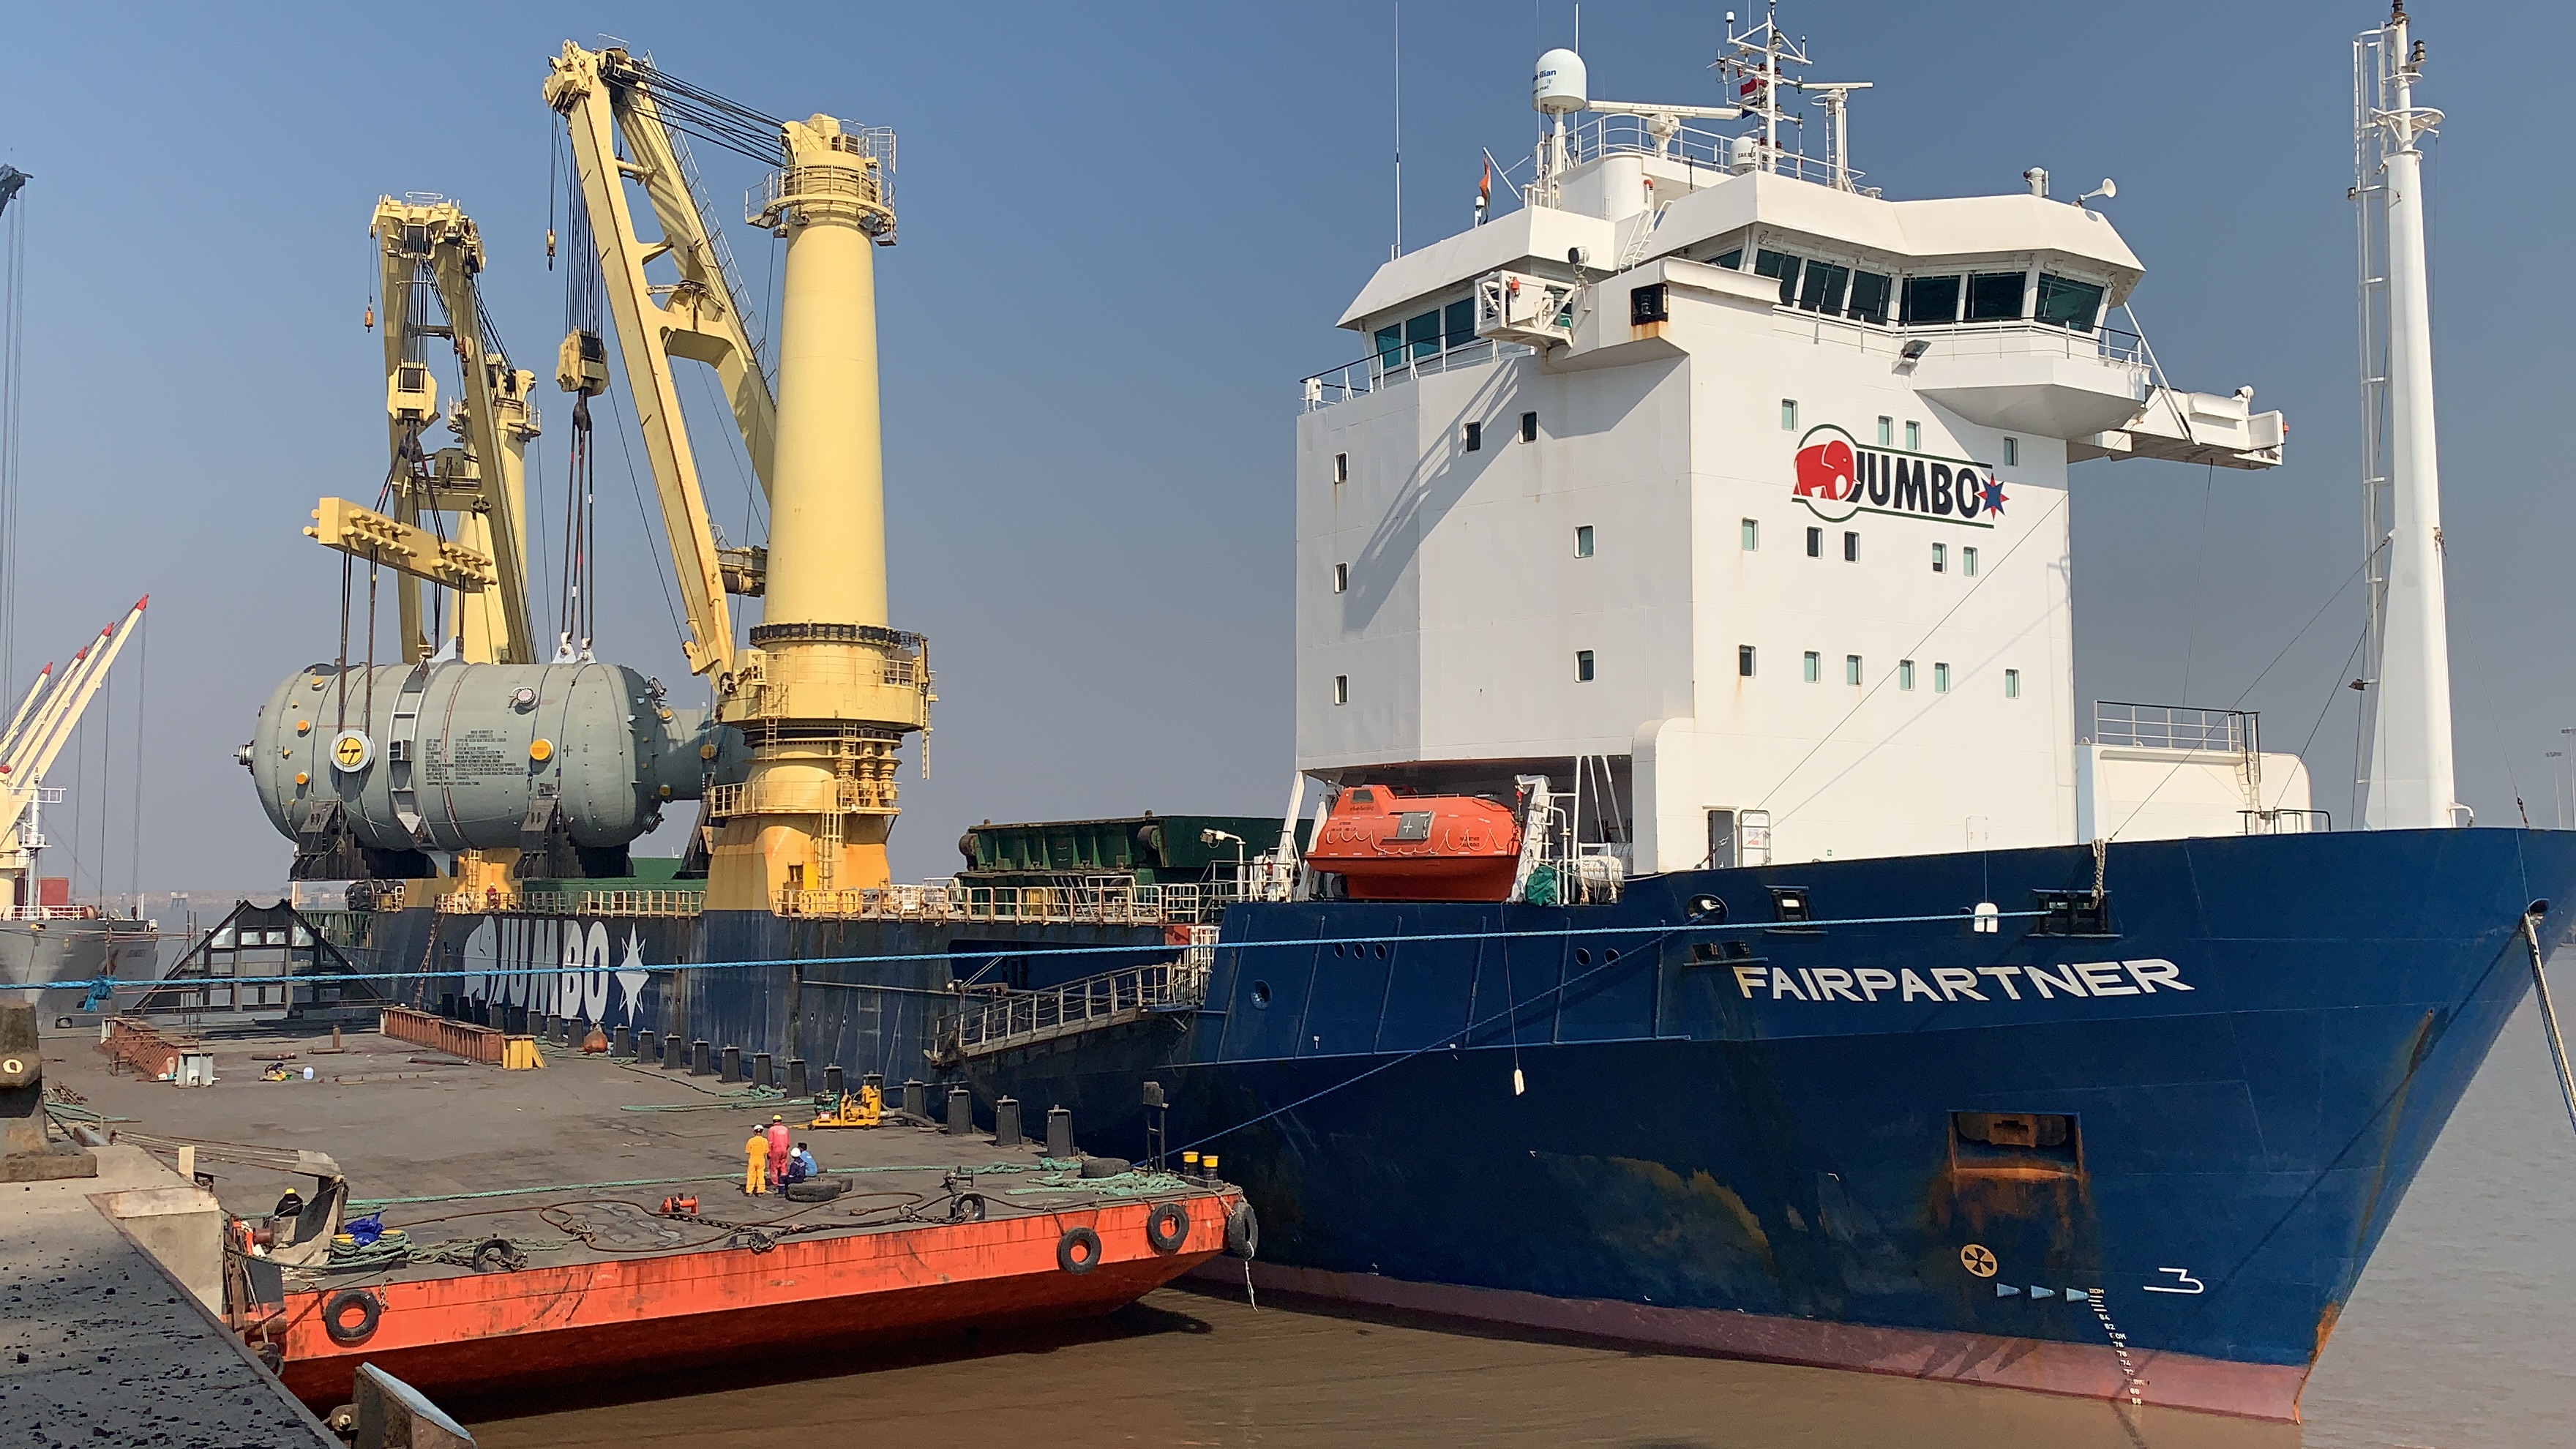 Heavy lift vessel 'Fairpartner' Photo, Jumbo.